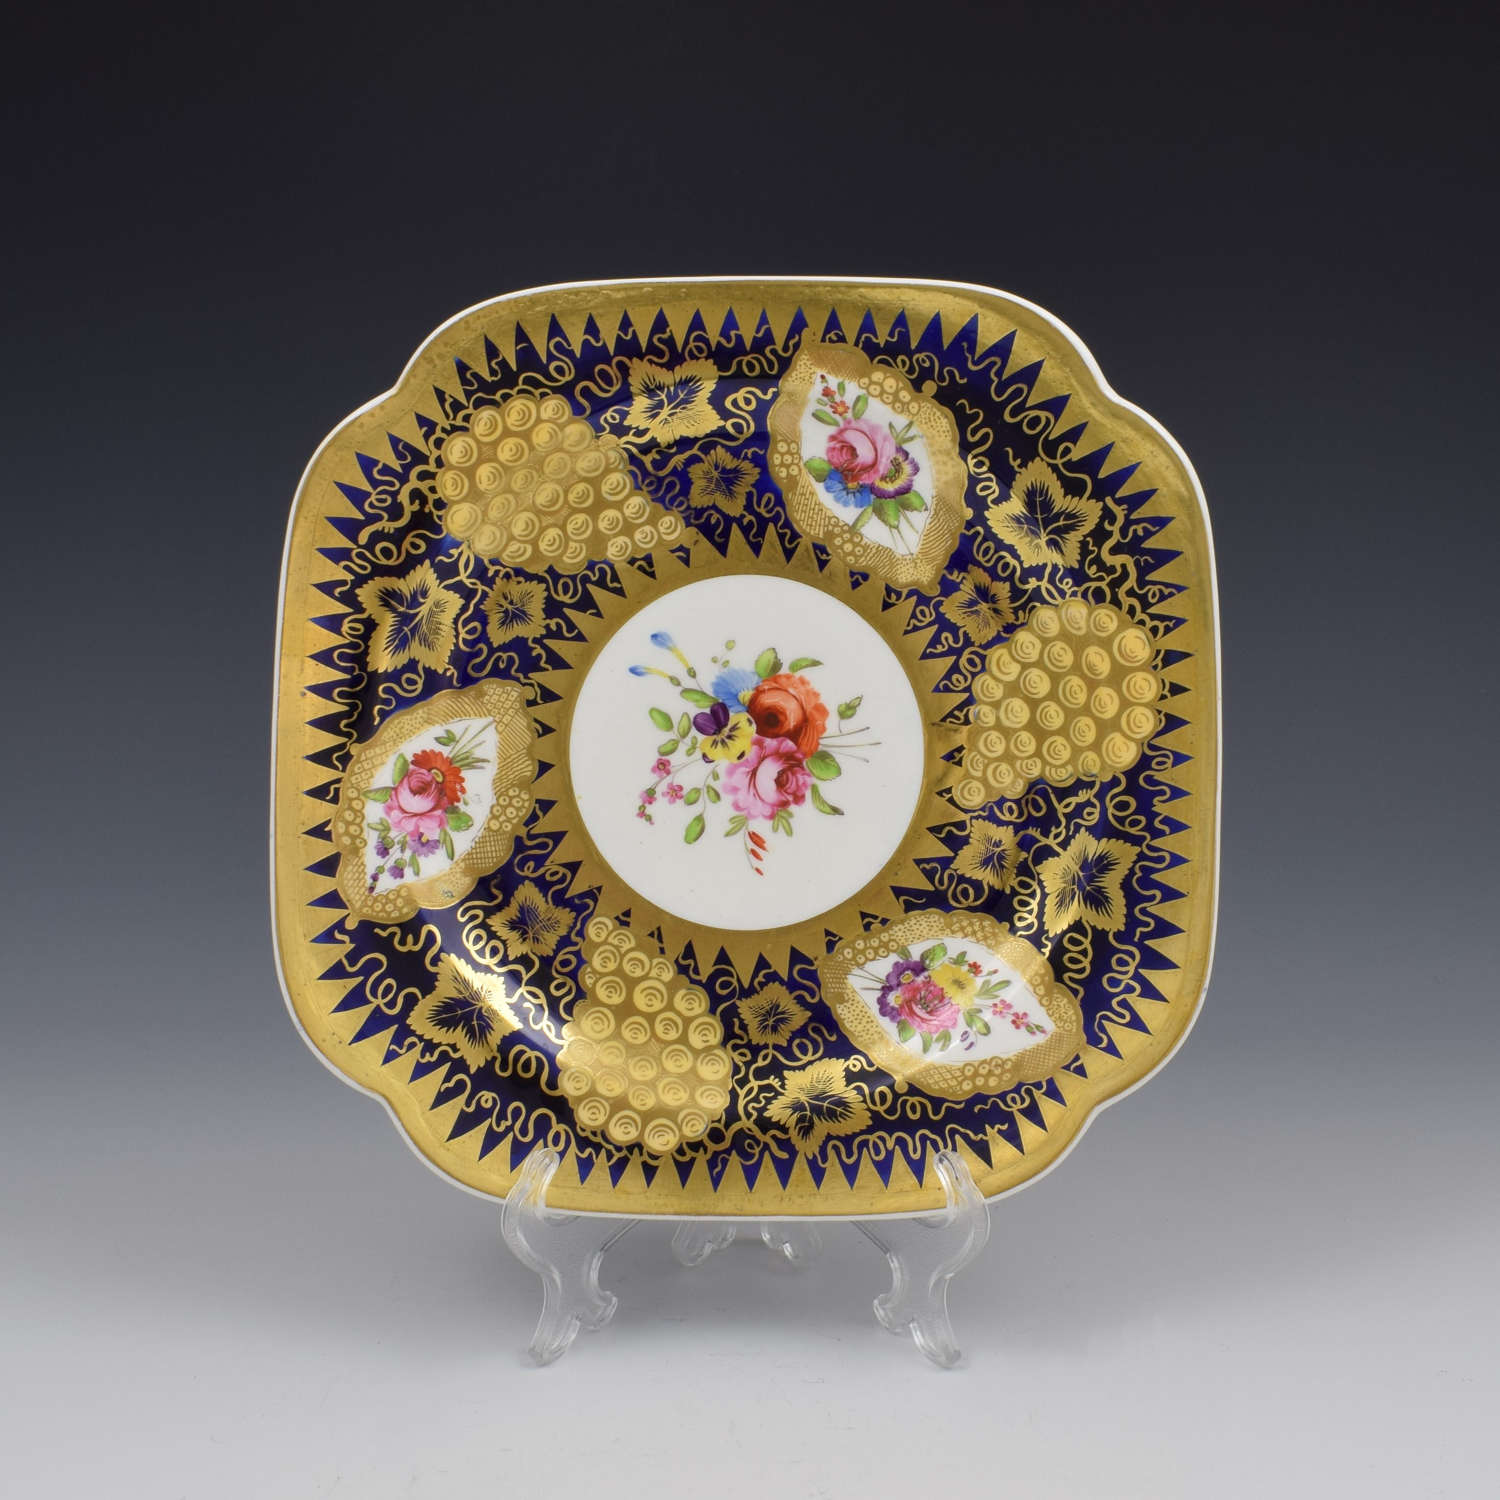 Spode Felspar Porcelain Dessert Serving Plate Pattern 4003 c.1825